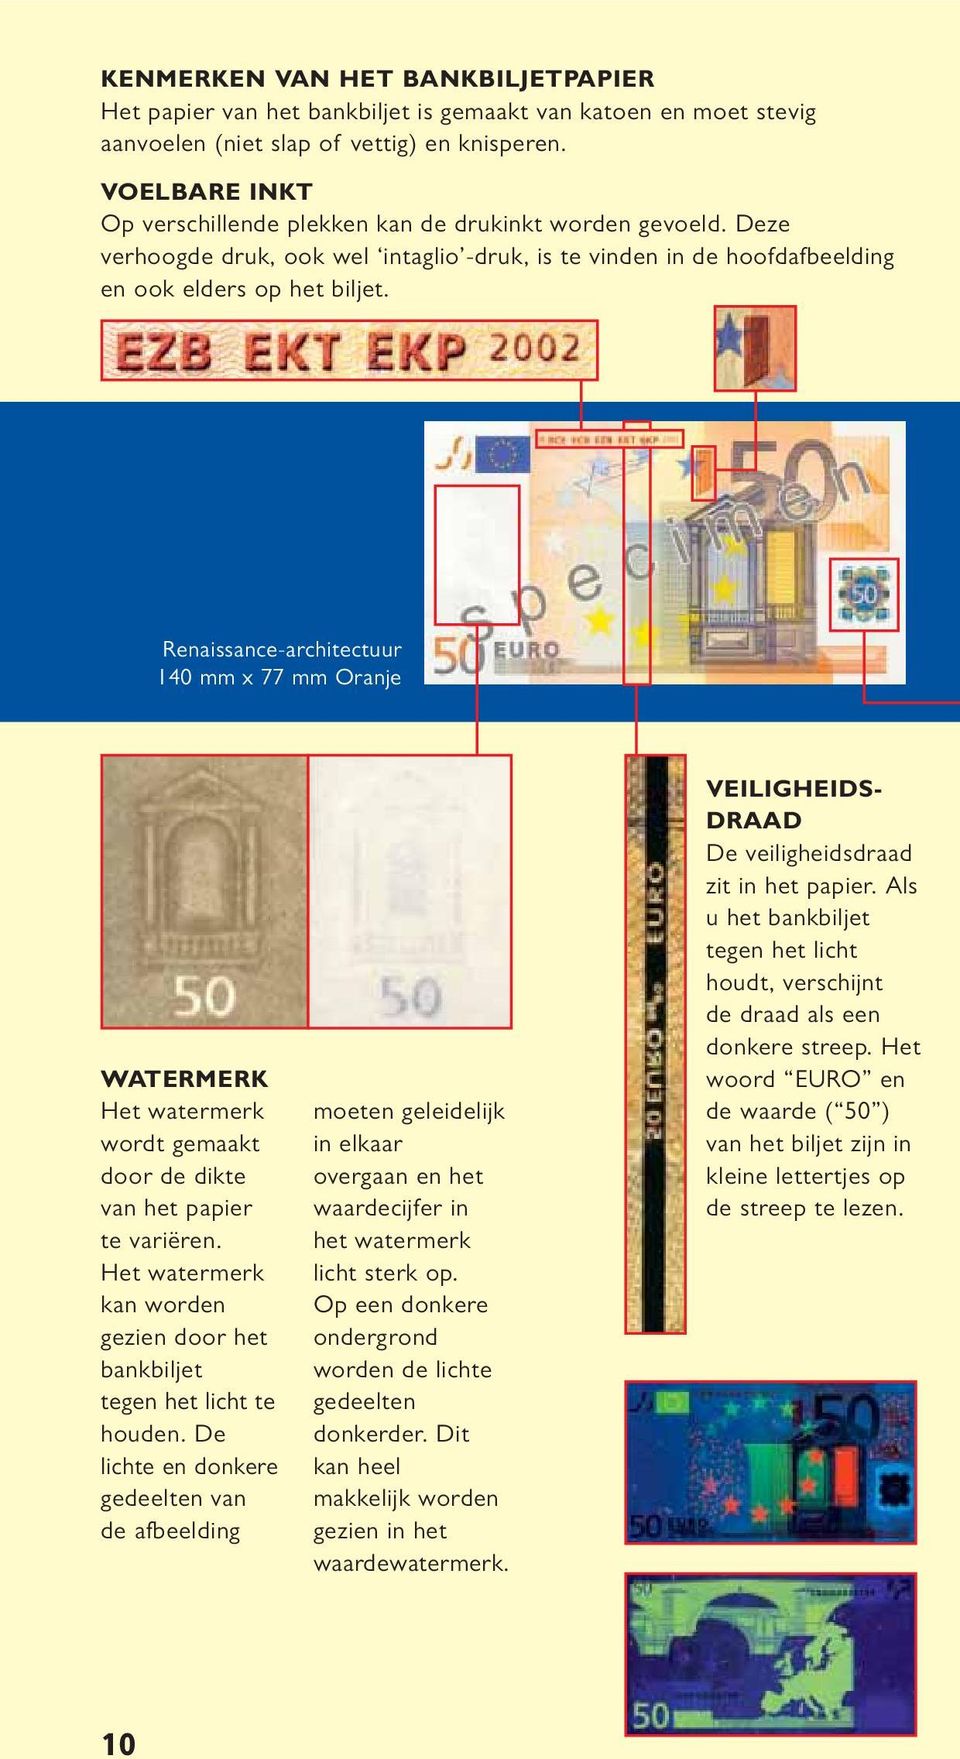 Renaissance-architectuur 140 mm x 77 mm Oranje WATERMERK wordt gemaakt door de dikte van het papier te variëren. kan worden gezien door het bankbiljet tegen het licht te houden.